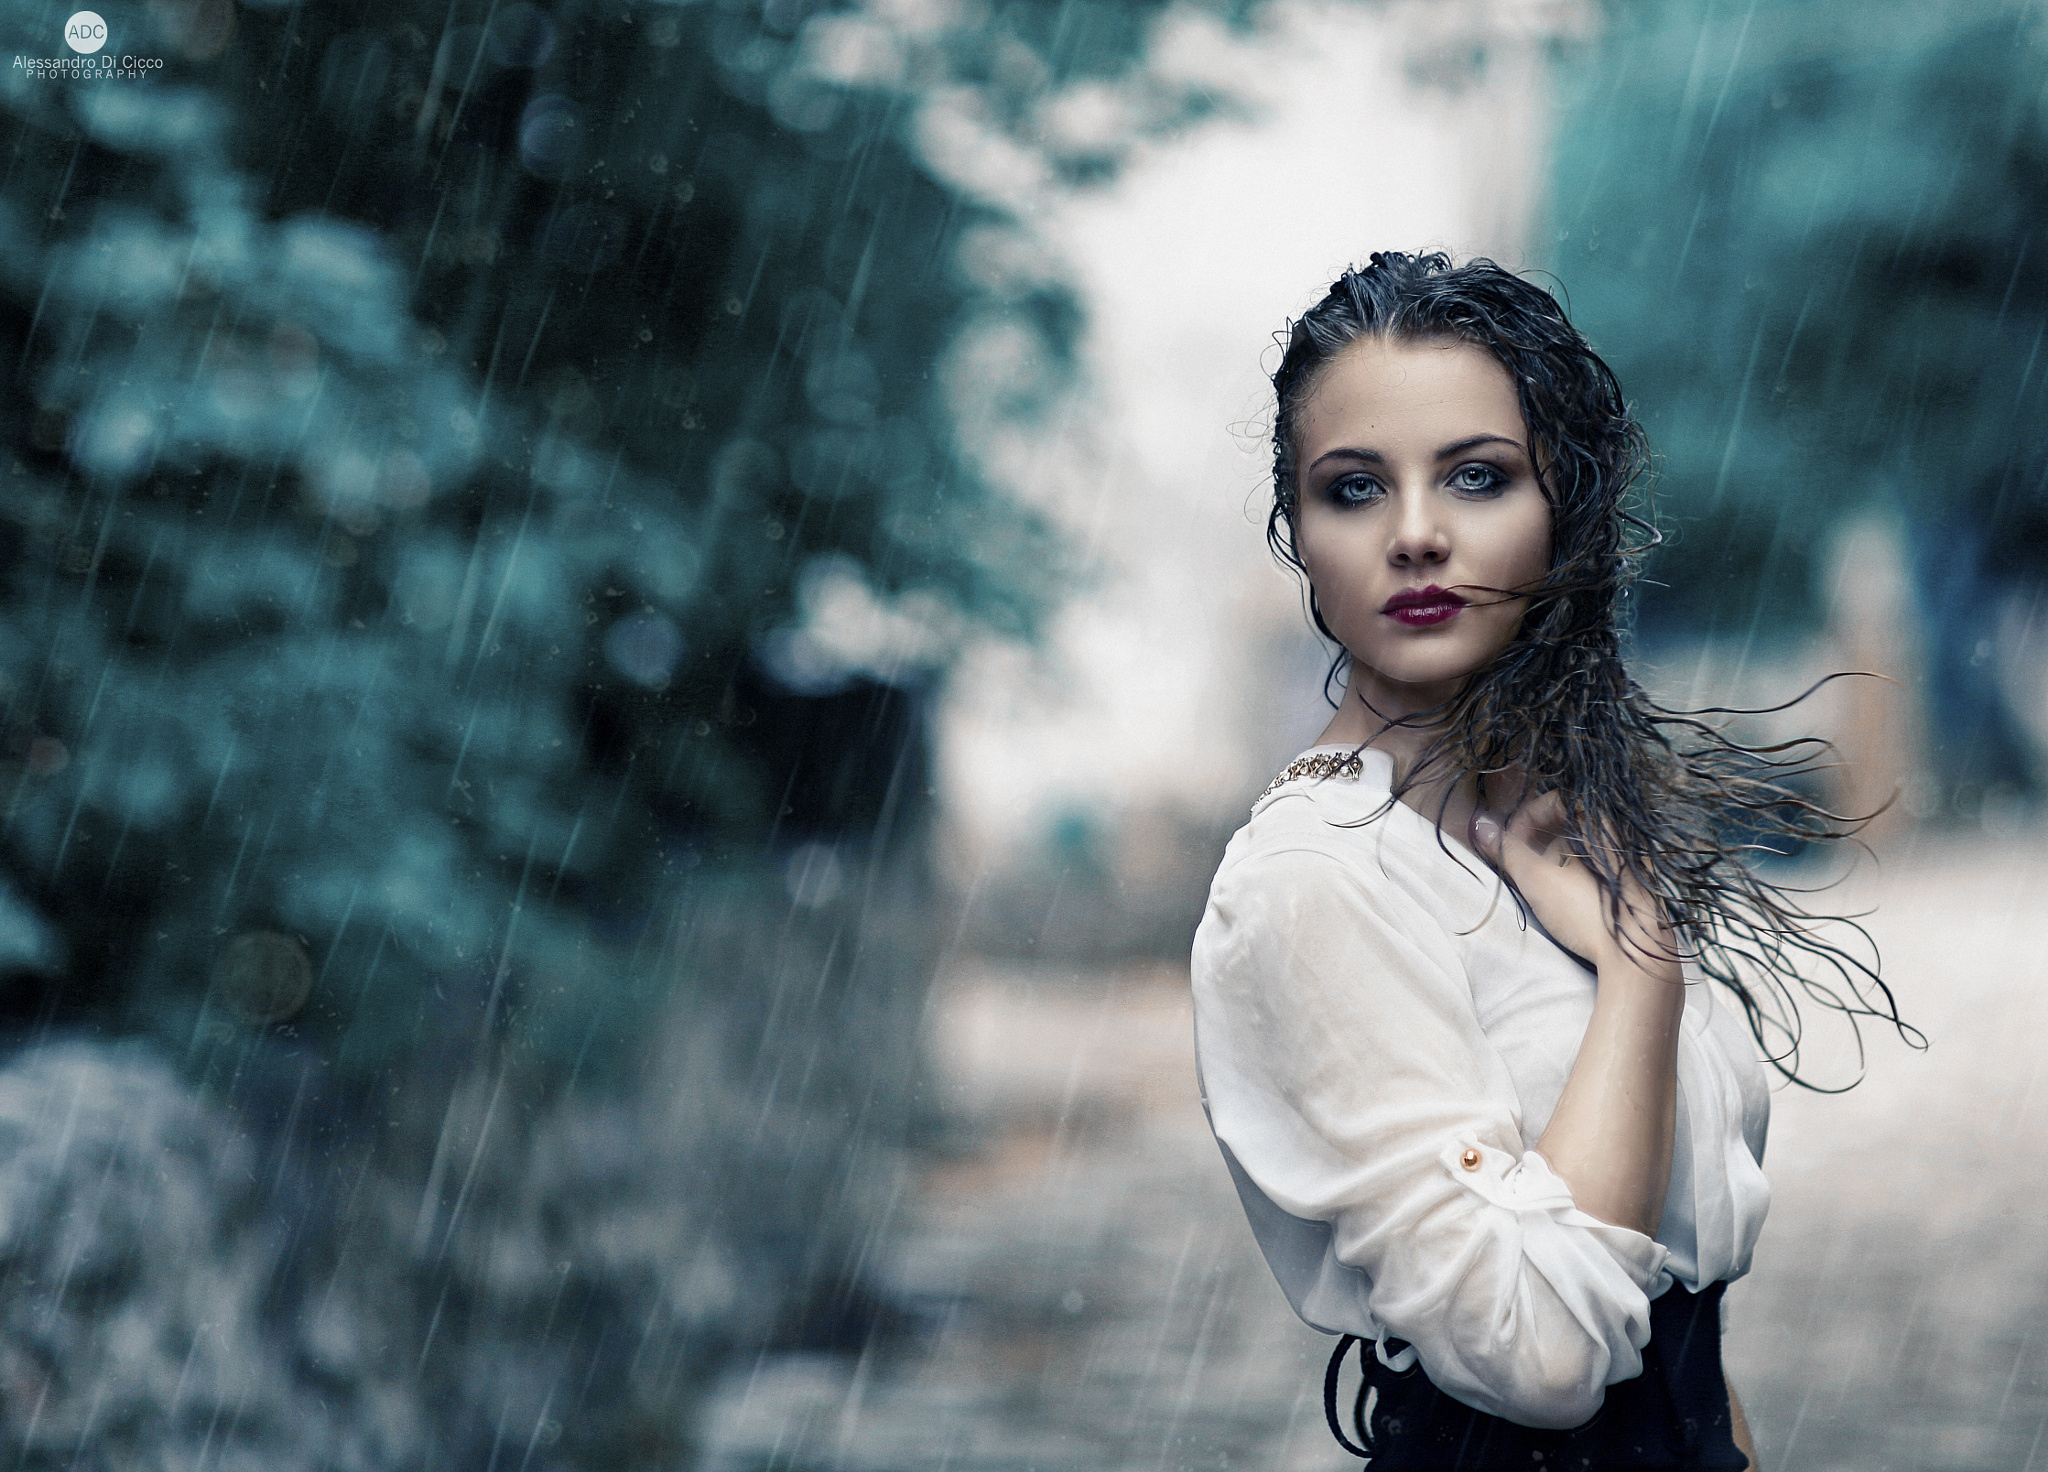 Rain By Alessandro Di Cicco